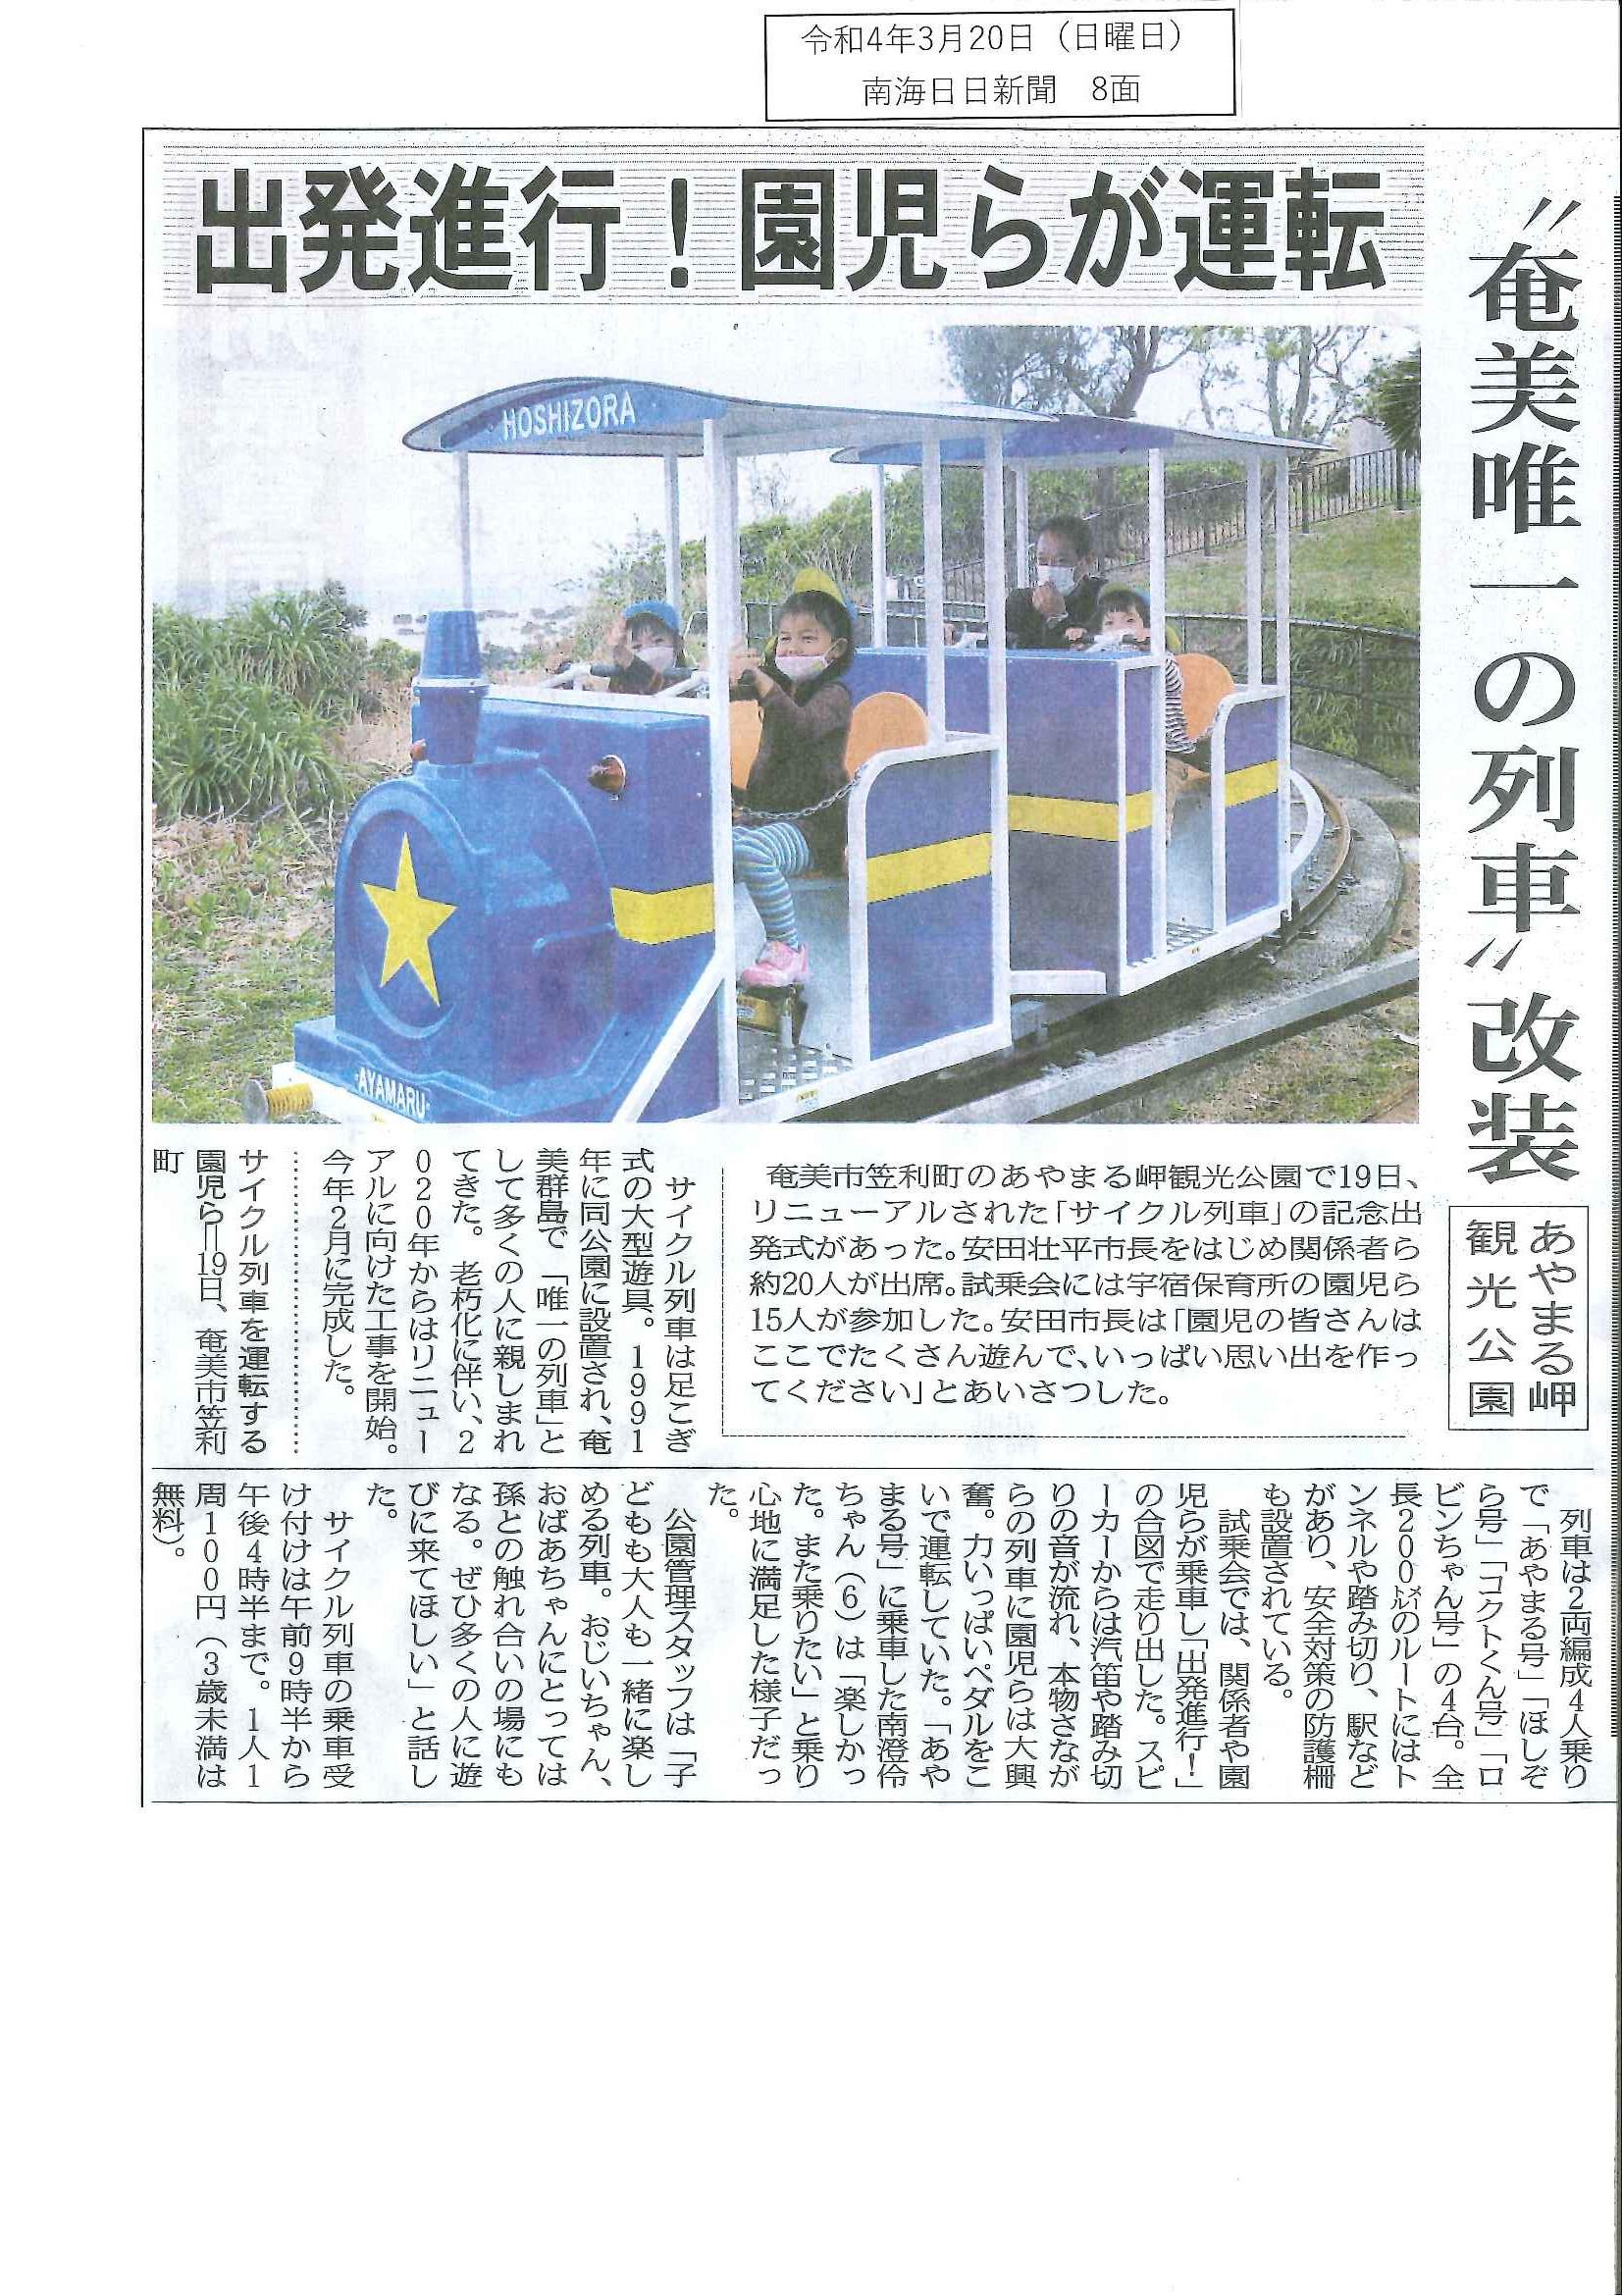 あやまる岬観光公園にサイクル列車リニューアル開通